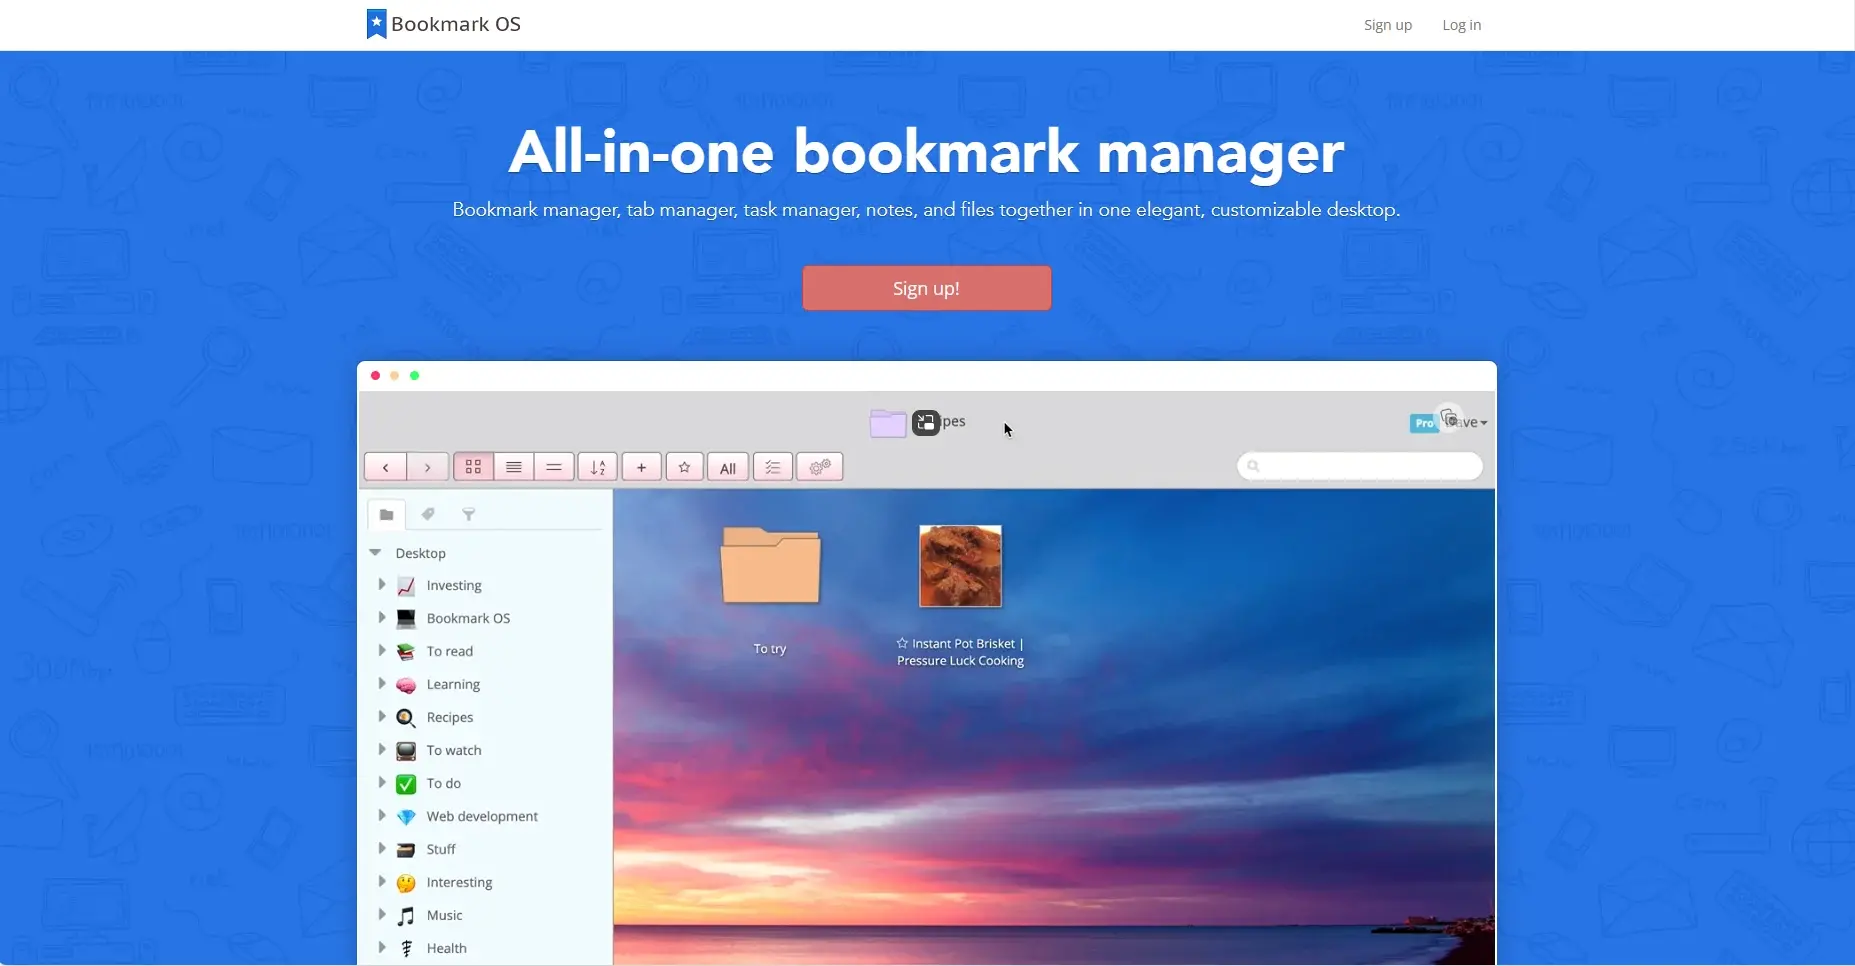 Blogduwebdesign outils productivite bookmarking bookmark os